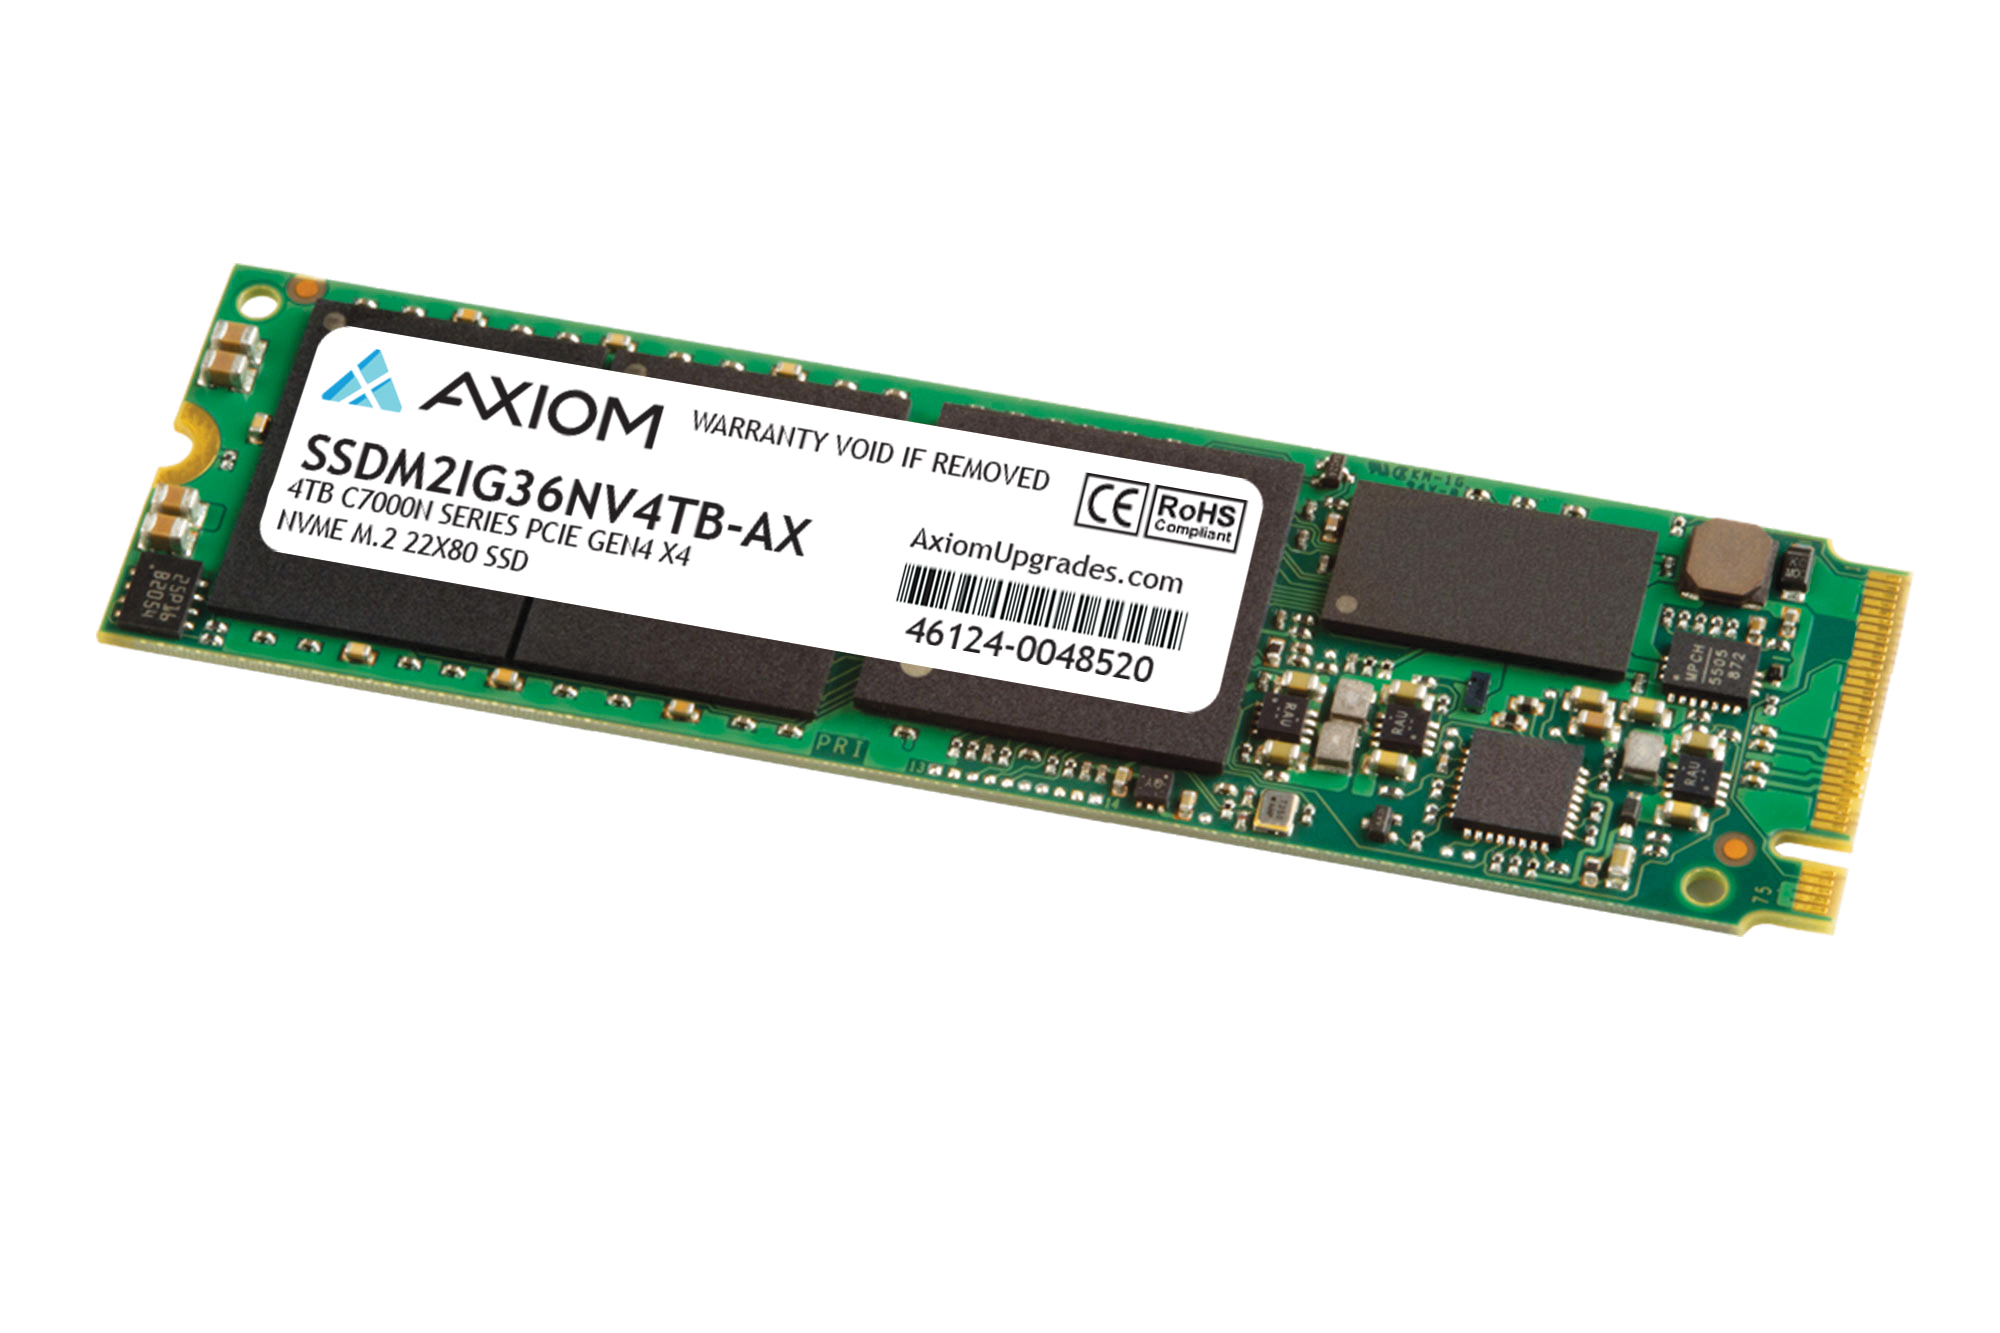 AXIOM 4TB C7000N SERIES PCIE GEN4 X4 NVME M.2 22X80 SSD - 3D NAND